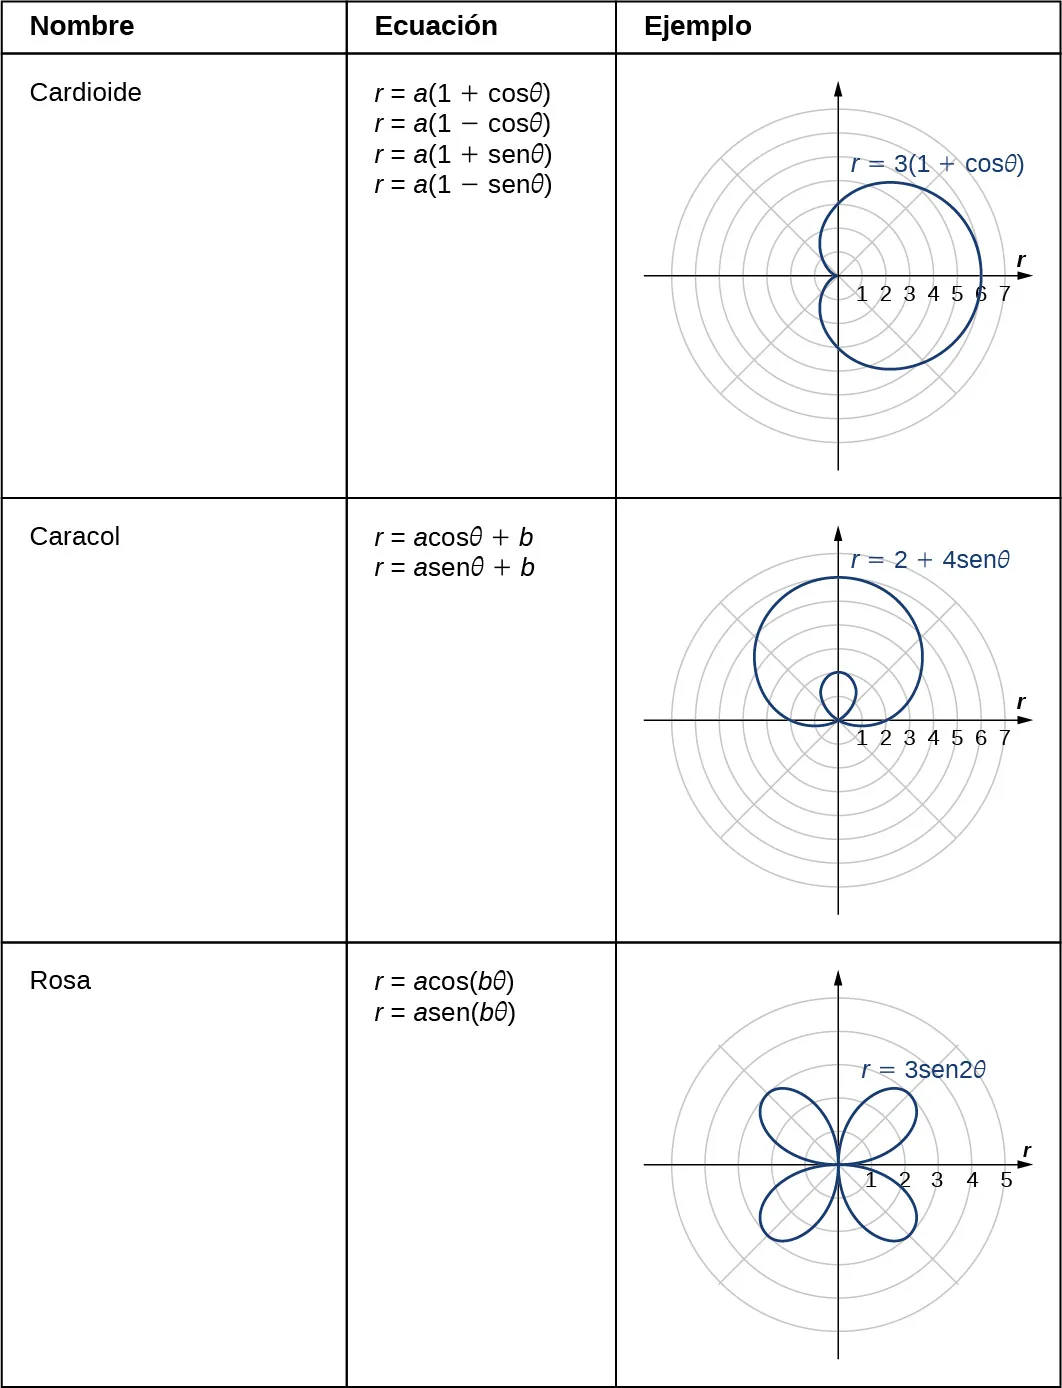 Esta tabla tiene tres columnas y 3 filas. La primera fila es Espiral; r = a + bθ; y una imagen de una espiral que comienza en el origen con la ecuación r = θ/3. La segunda fila es Cardioide; r = a(1 + cosθ), r = a(1 – cosθ), r = a(1 + senθ), r = a(1 – senθ); y una imagen de una cardioide con ecuación r = 3(1 + cosθ): la cardioide parece un corazón girado de lado con un fondo redondeado en vez de puntiagudo. La tercera fila es Caracol; r = a cosθ + b, r = a senθ + b; y una imagen de un caracol con ecuación r = 2 + 4 senθ: la figura parece un círculo deformado con un lazo en su interior. La séptima fila es Rosa; r = a cos(bθ), r = a sen(bθ); y una imagen de una rosa con ecuación r = 3 sen(2θ): la rosa parece una flor con cuatro pétalos, un pétalo en cada cuadrante, cada uno con longitud 3 y que llega al origen entre cada pétalo.